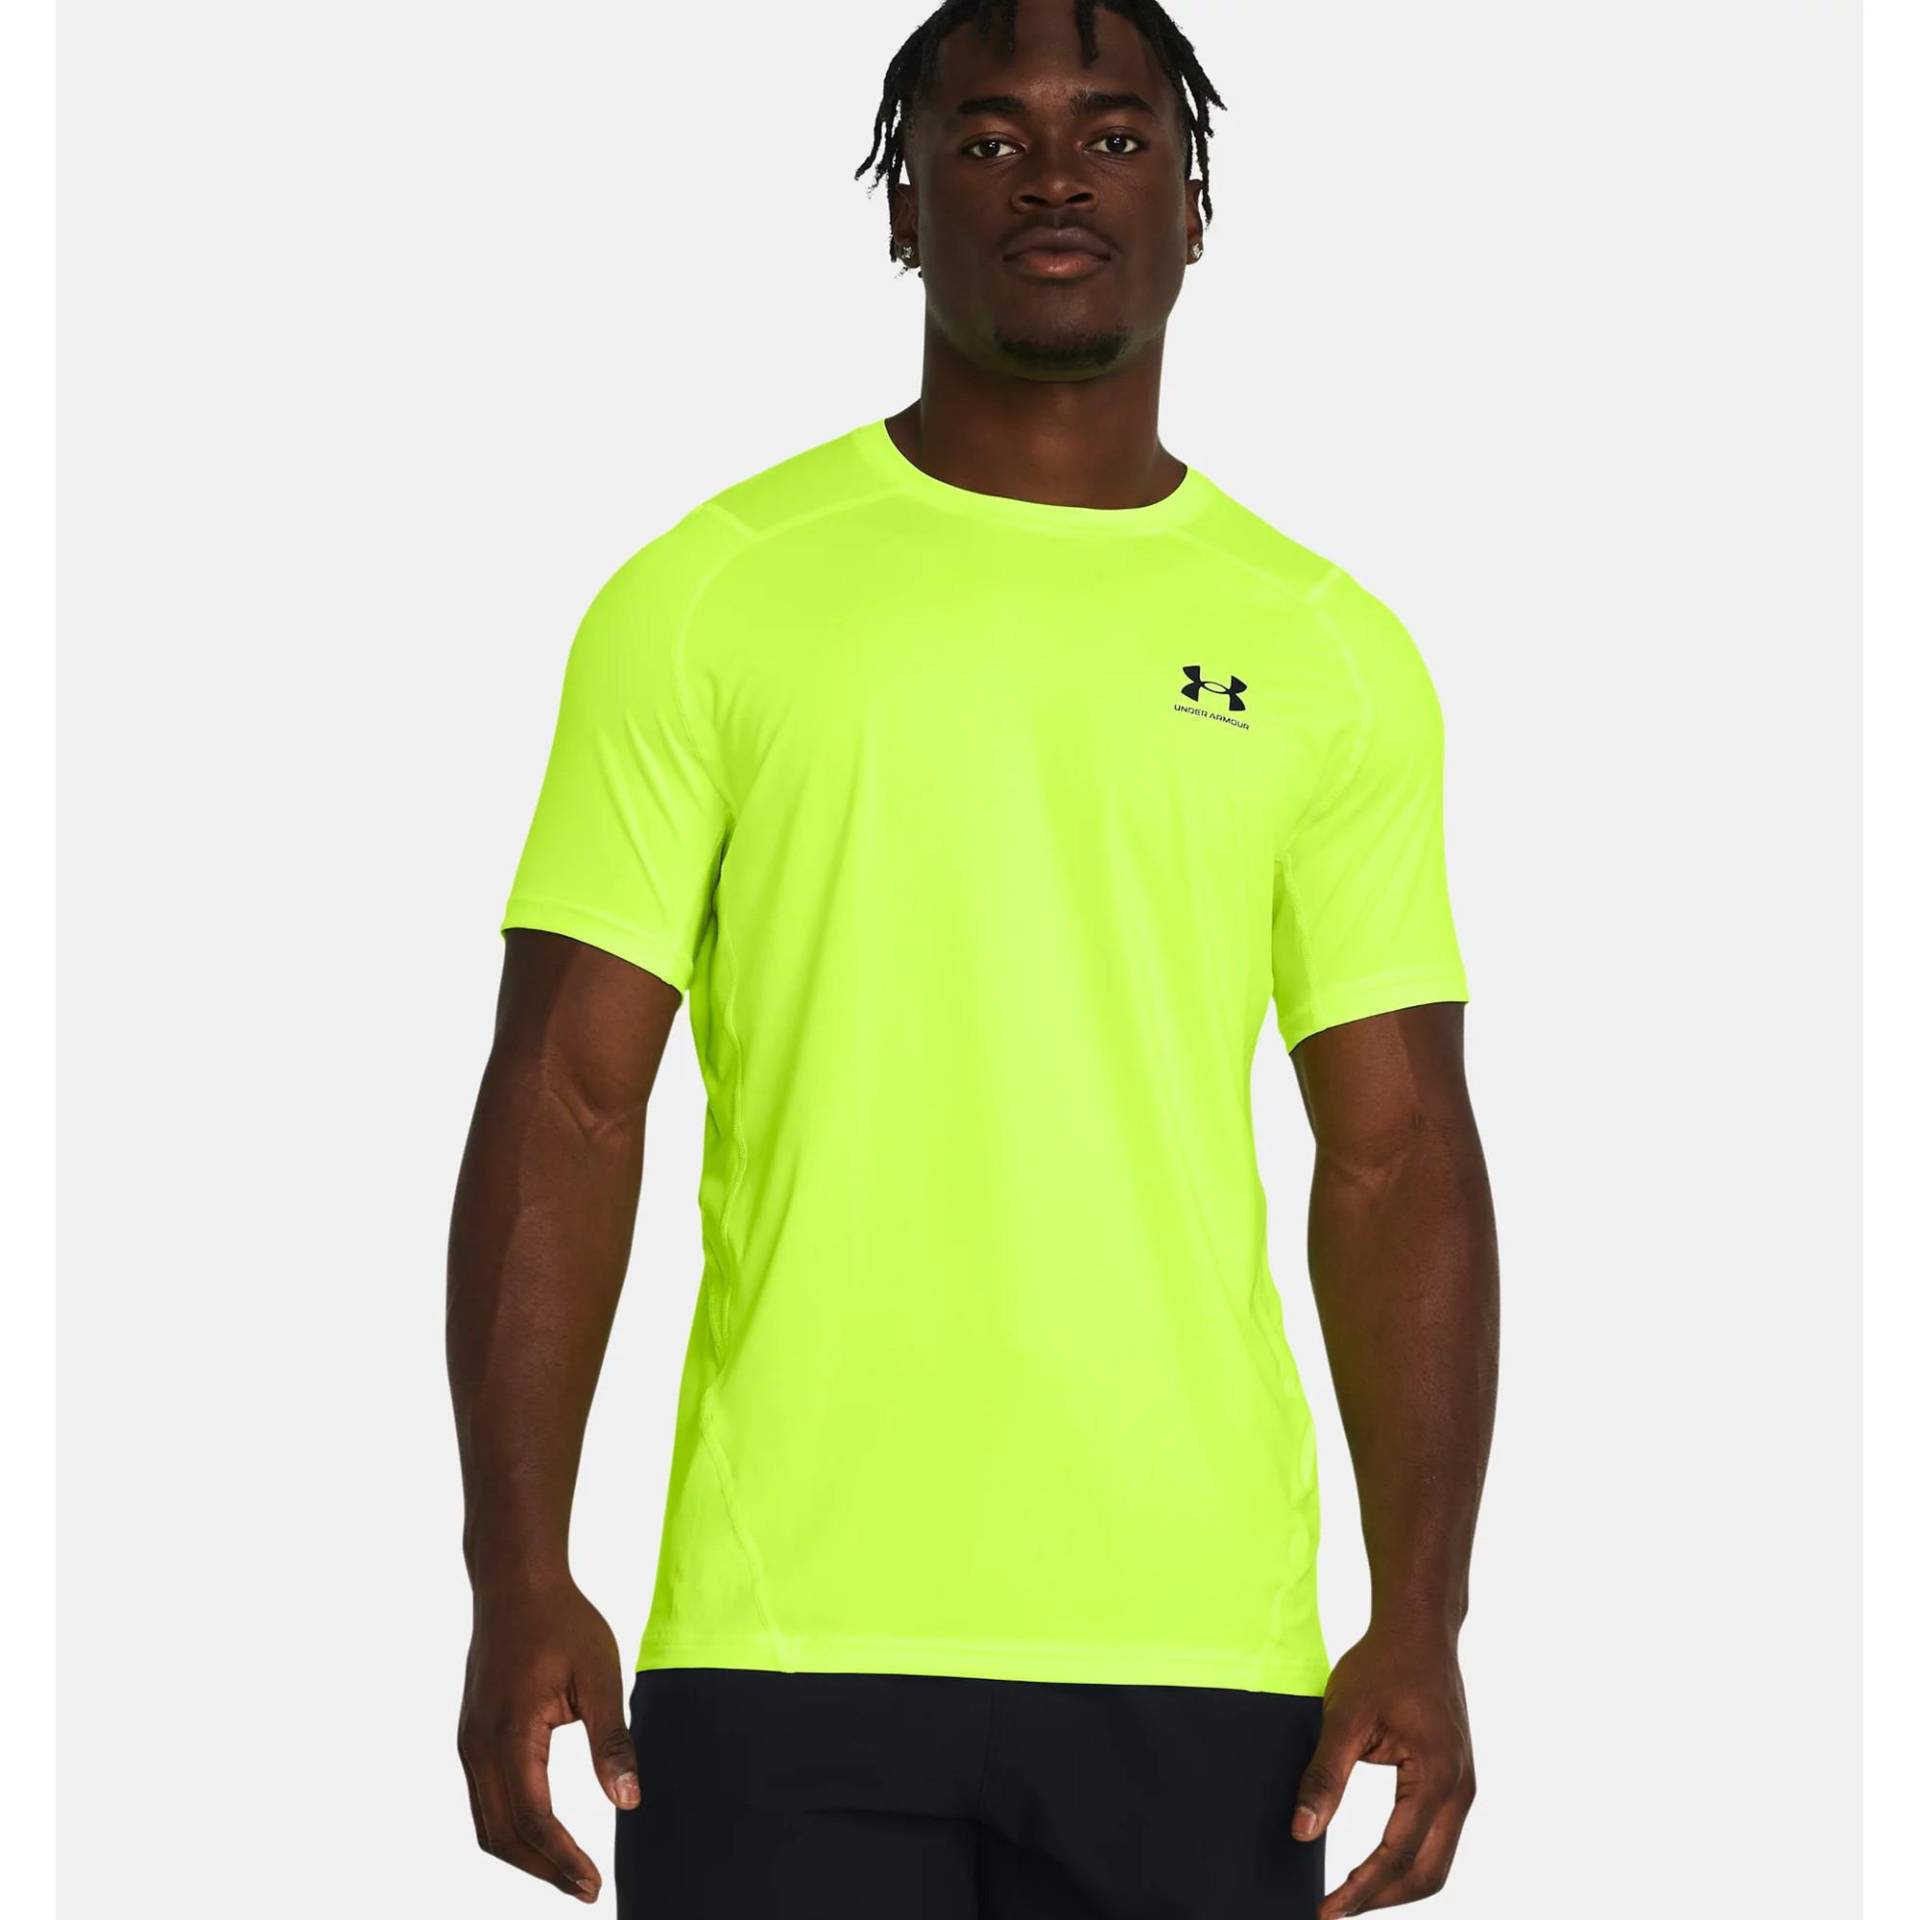 T-shirt Herren Gelb XL von UNDER ARMOUR